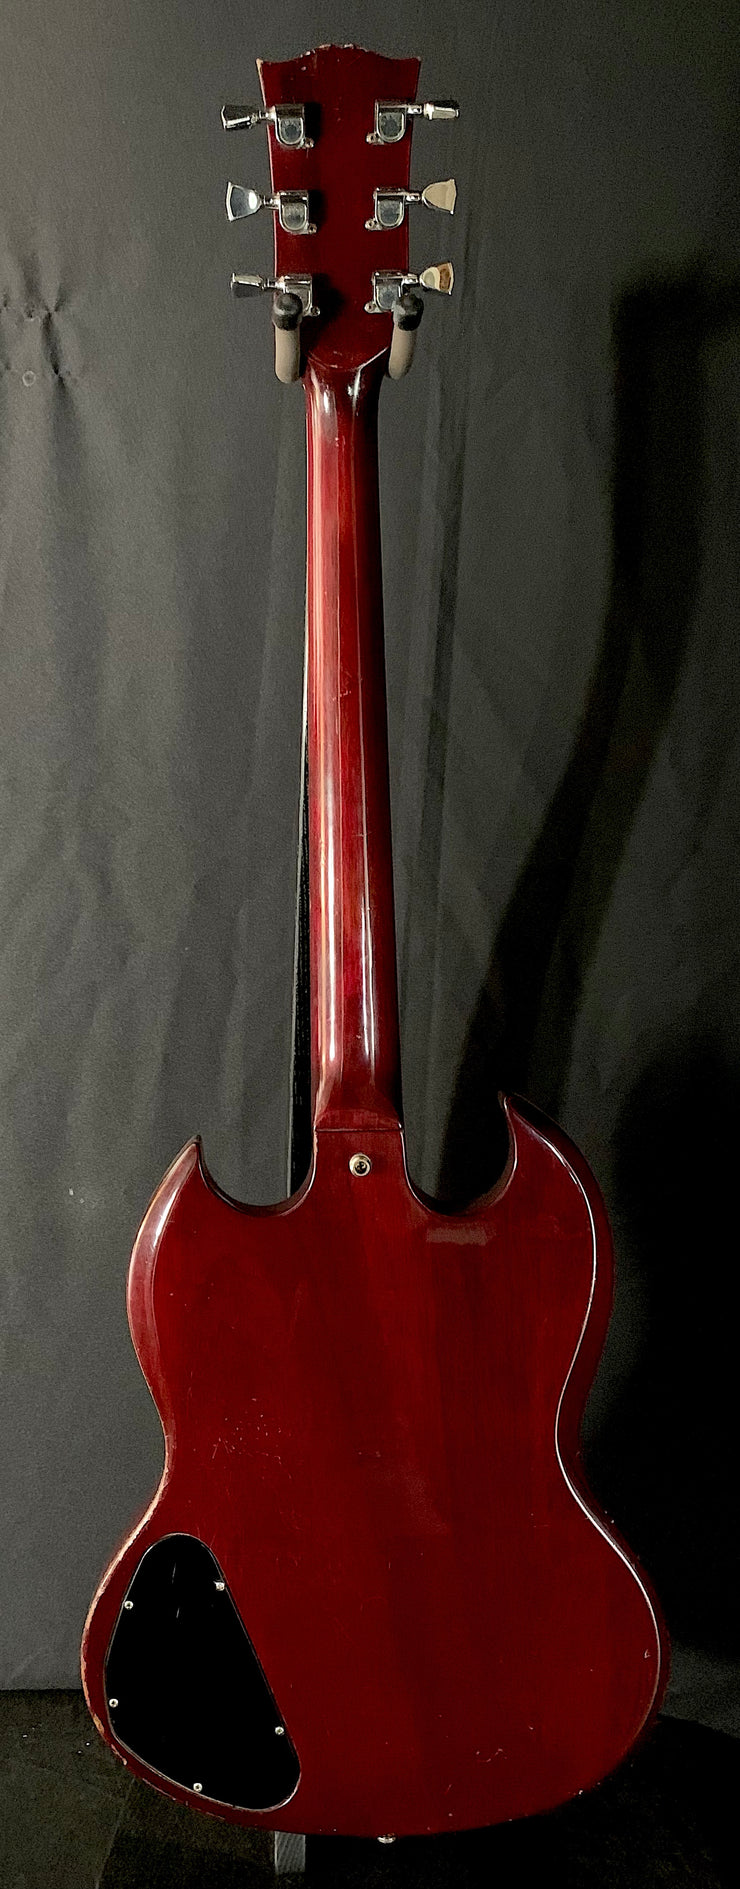 1975 Gibson SG Standard